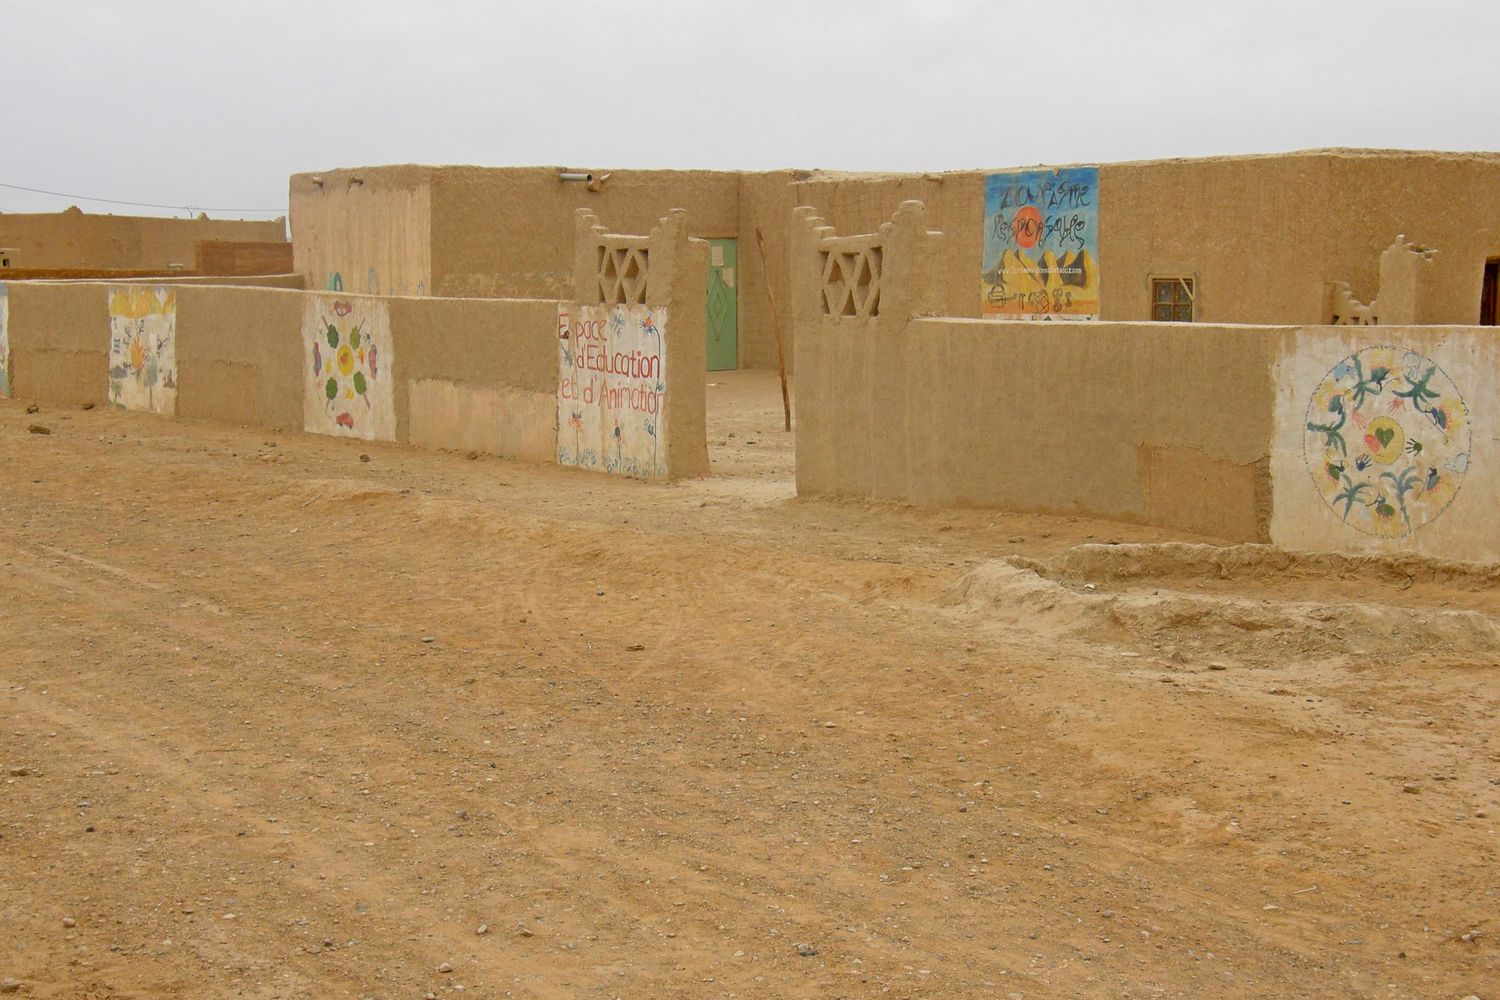 szkoła na pustyni, fot. S. Odrzykoski